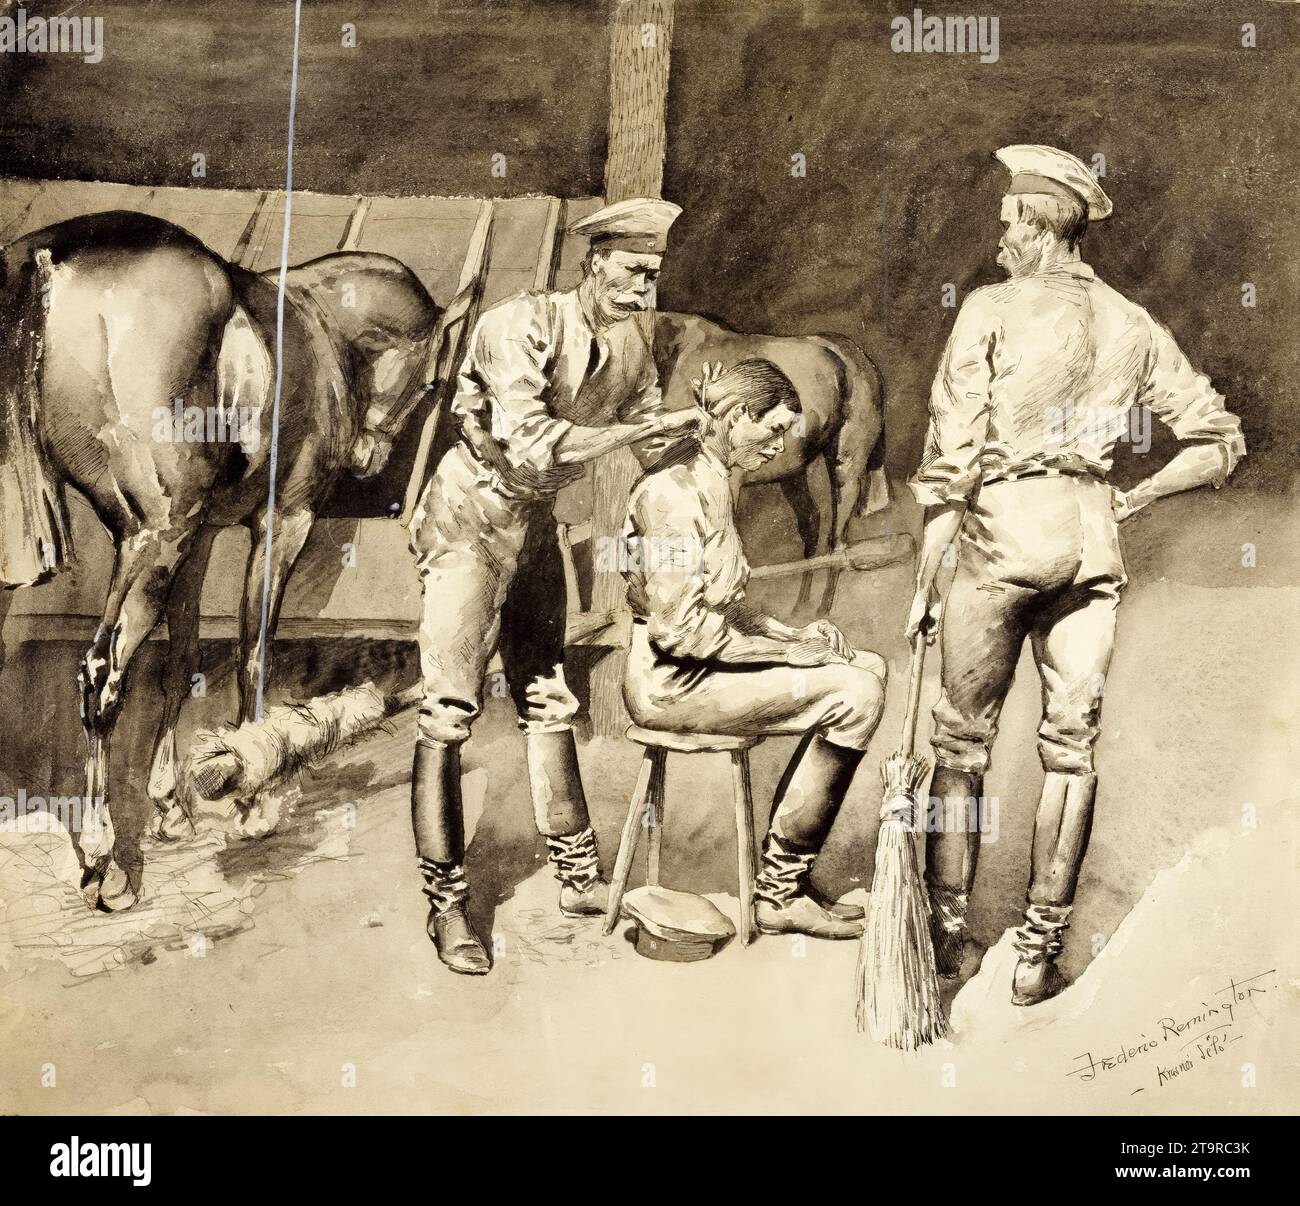 Frederic Remington, Une coupe de cheveux dans une écurie de cavalerie, aquarelle, 1891-1895 Banque D'Images